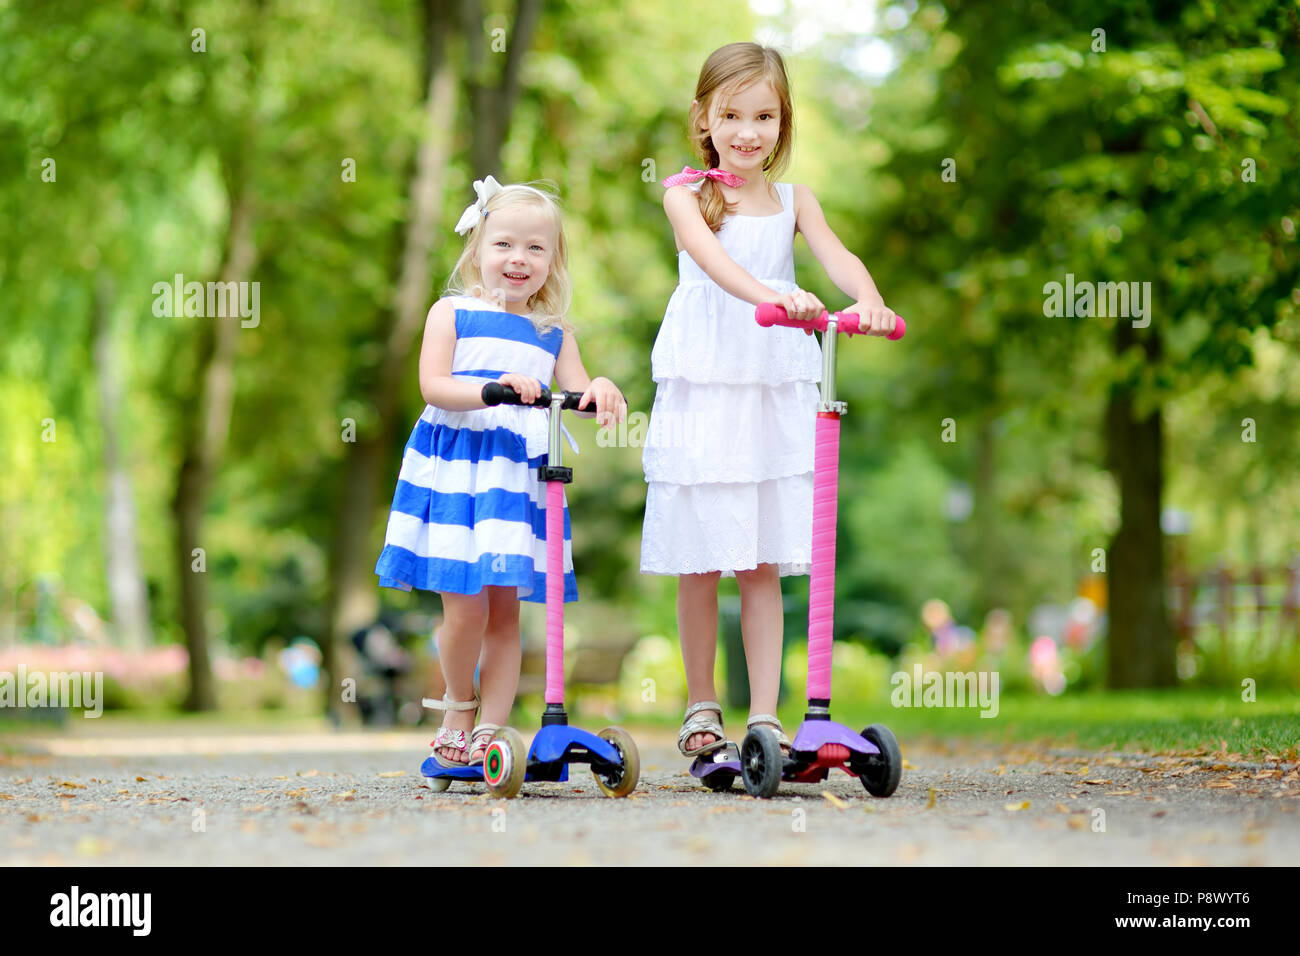 Sister ride. Сестры катаются. Со своей сестрой катается. Маленькие сестренки на батуте в парке фото.